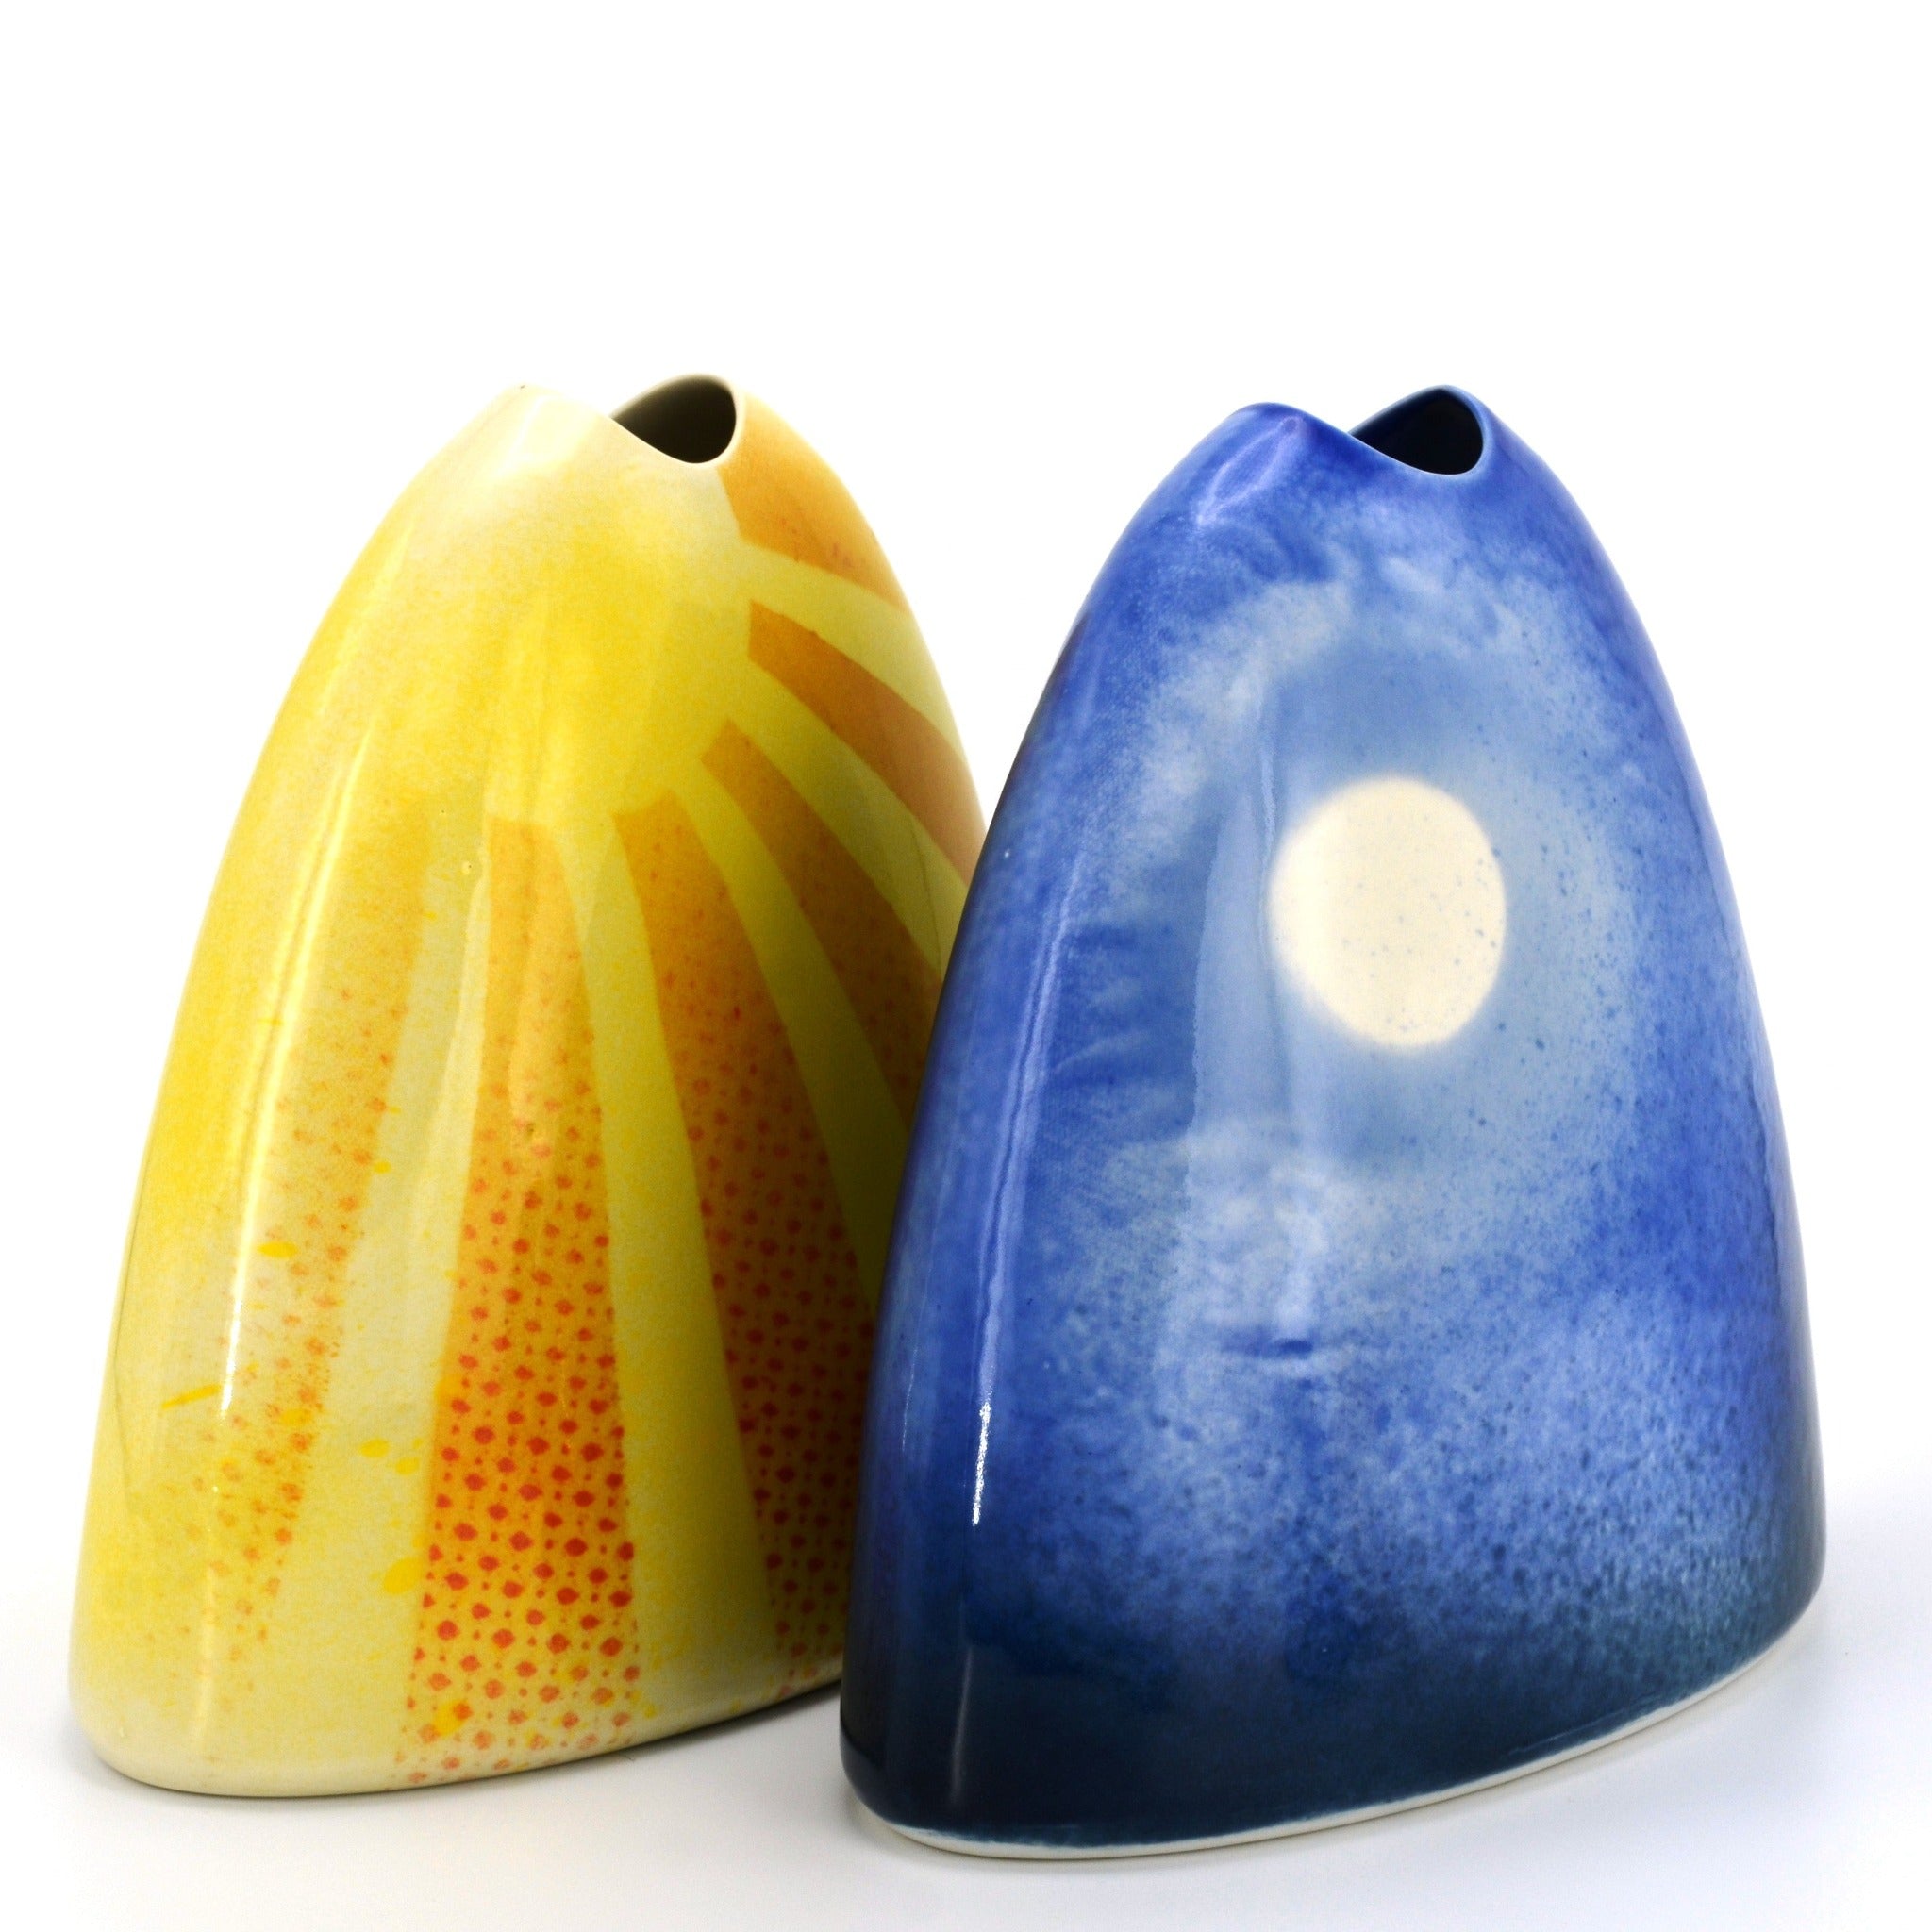 Porcelain vases "Sunshine" & "Moonlight" by Brett Smout